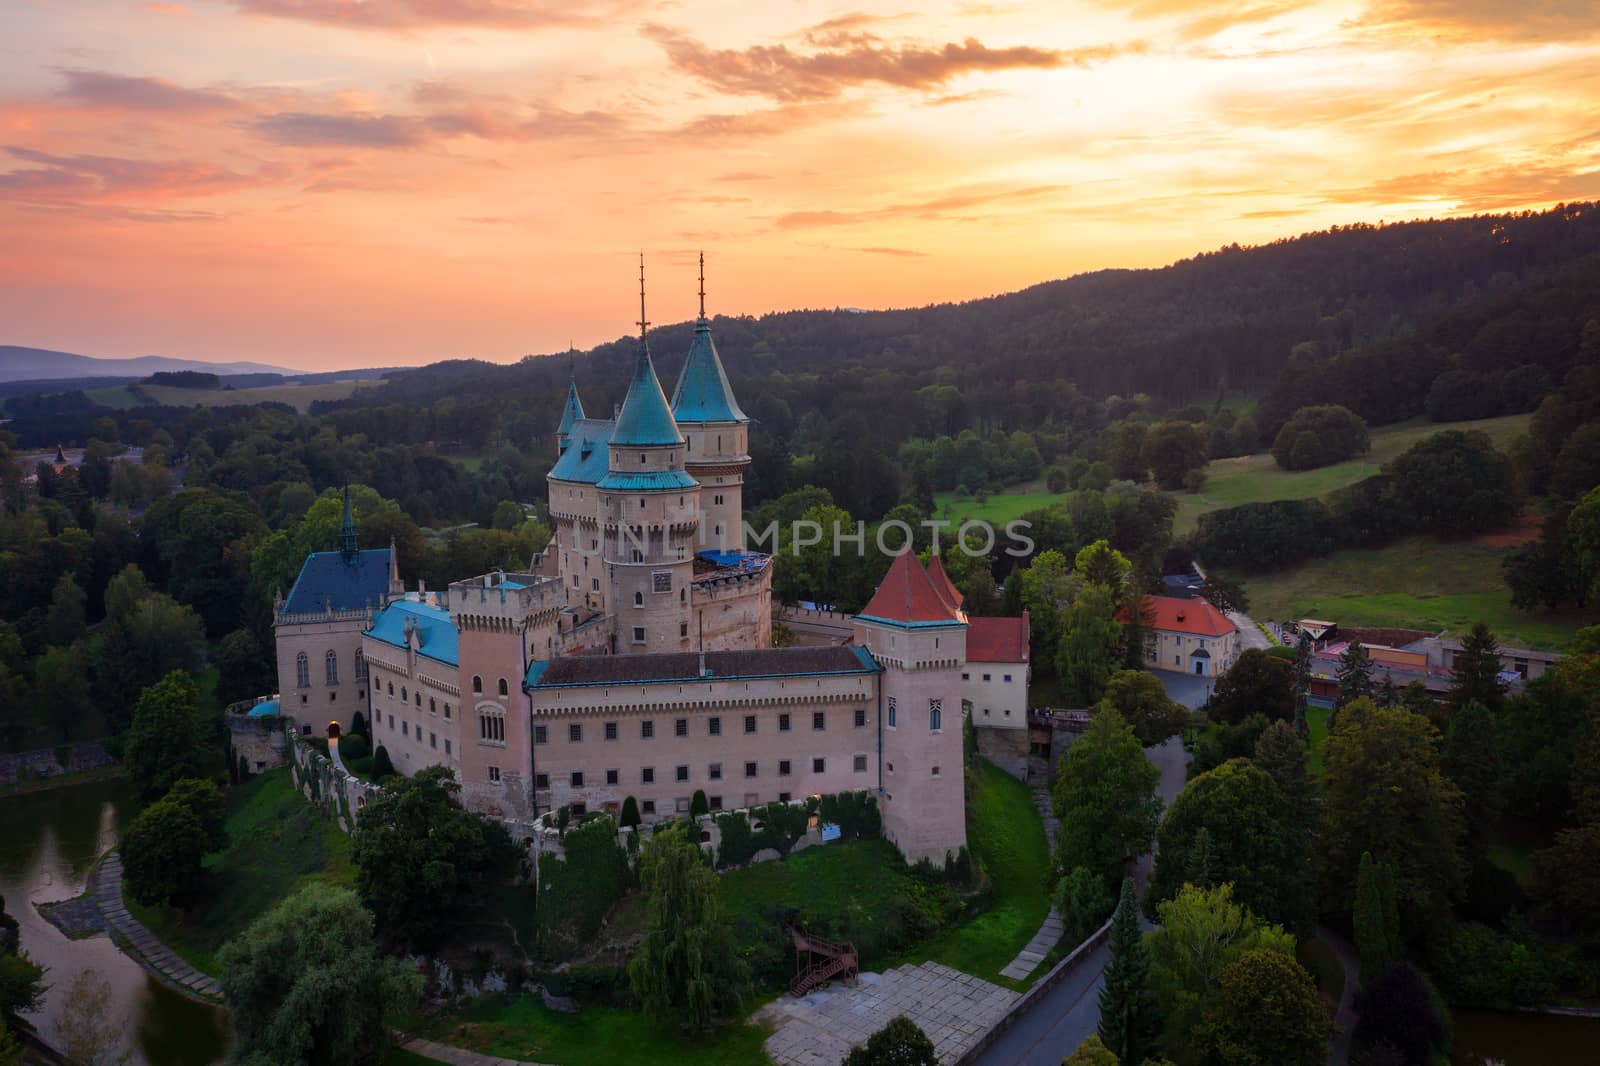 Castle Bojnice, central Europe, Slovakia. UNESCO. Sunset light.